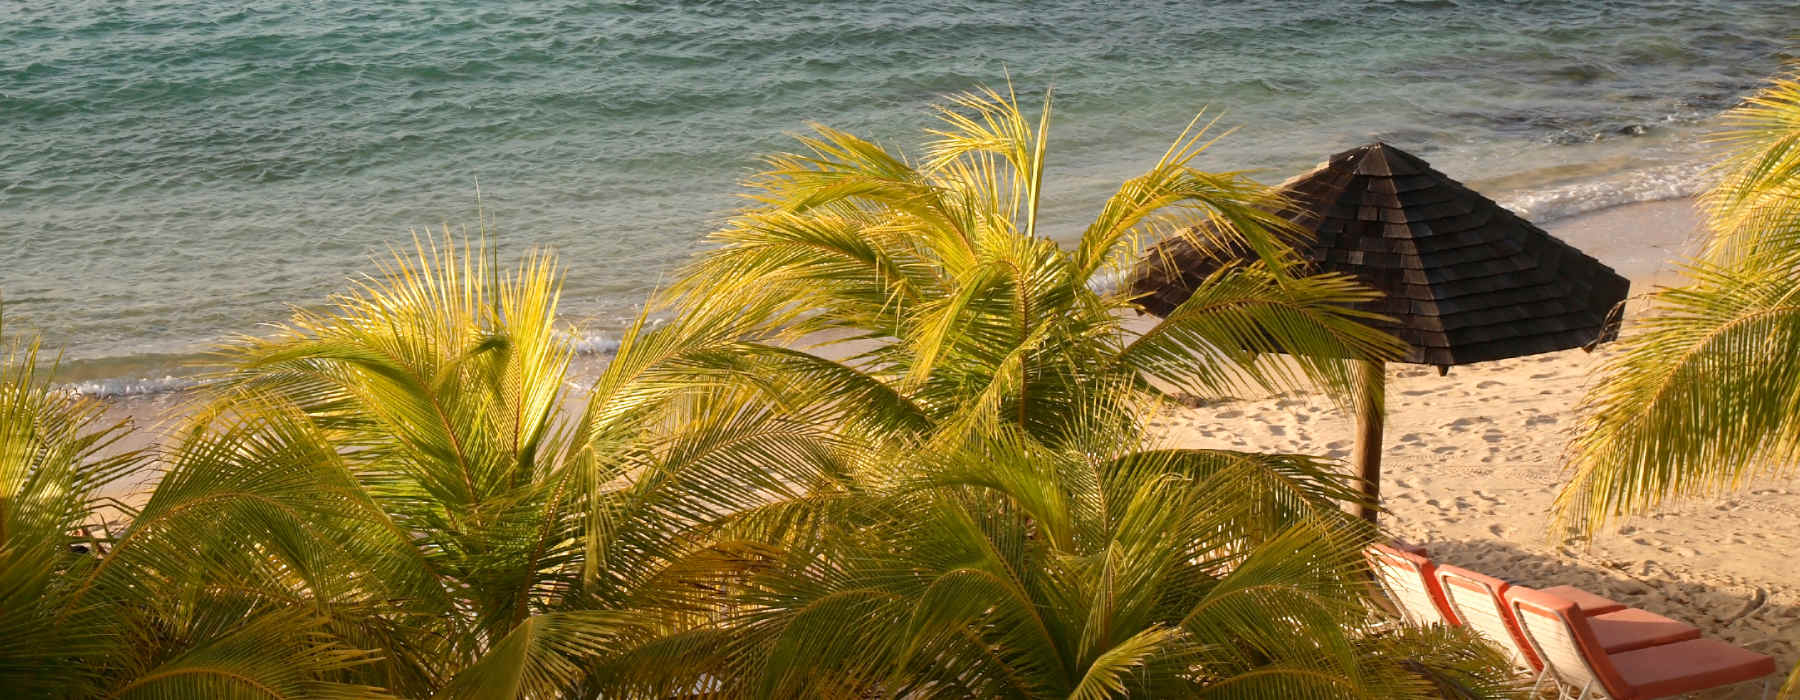 Jamaica<br class="hidden-md hidden-lg" /> Family Beach Holidays